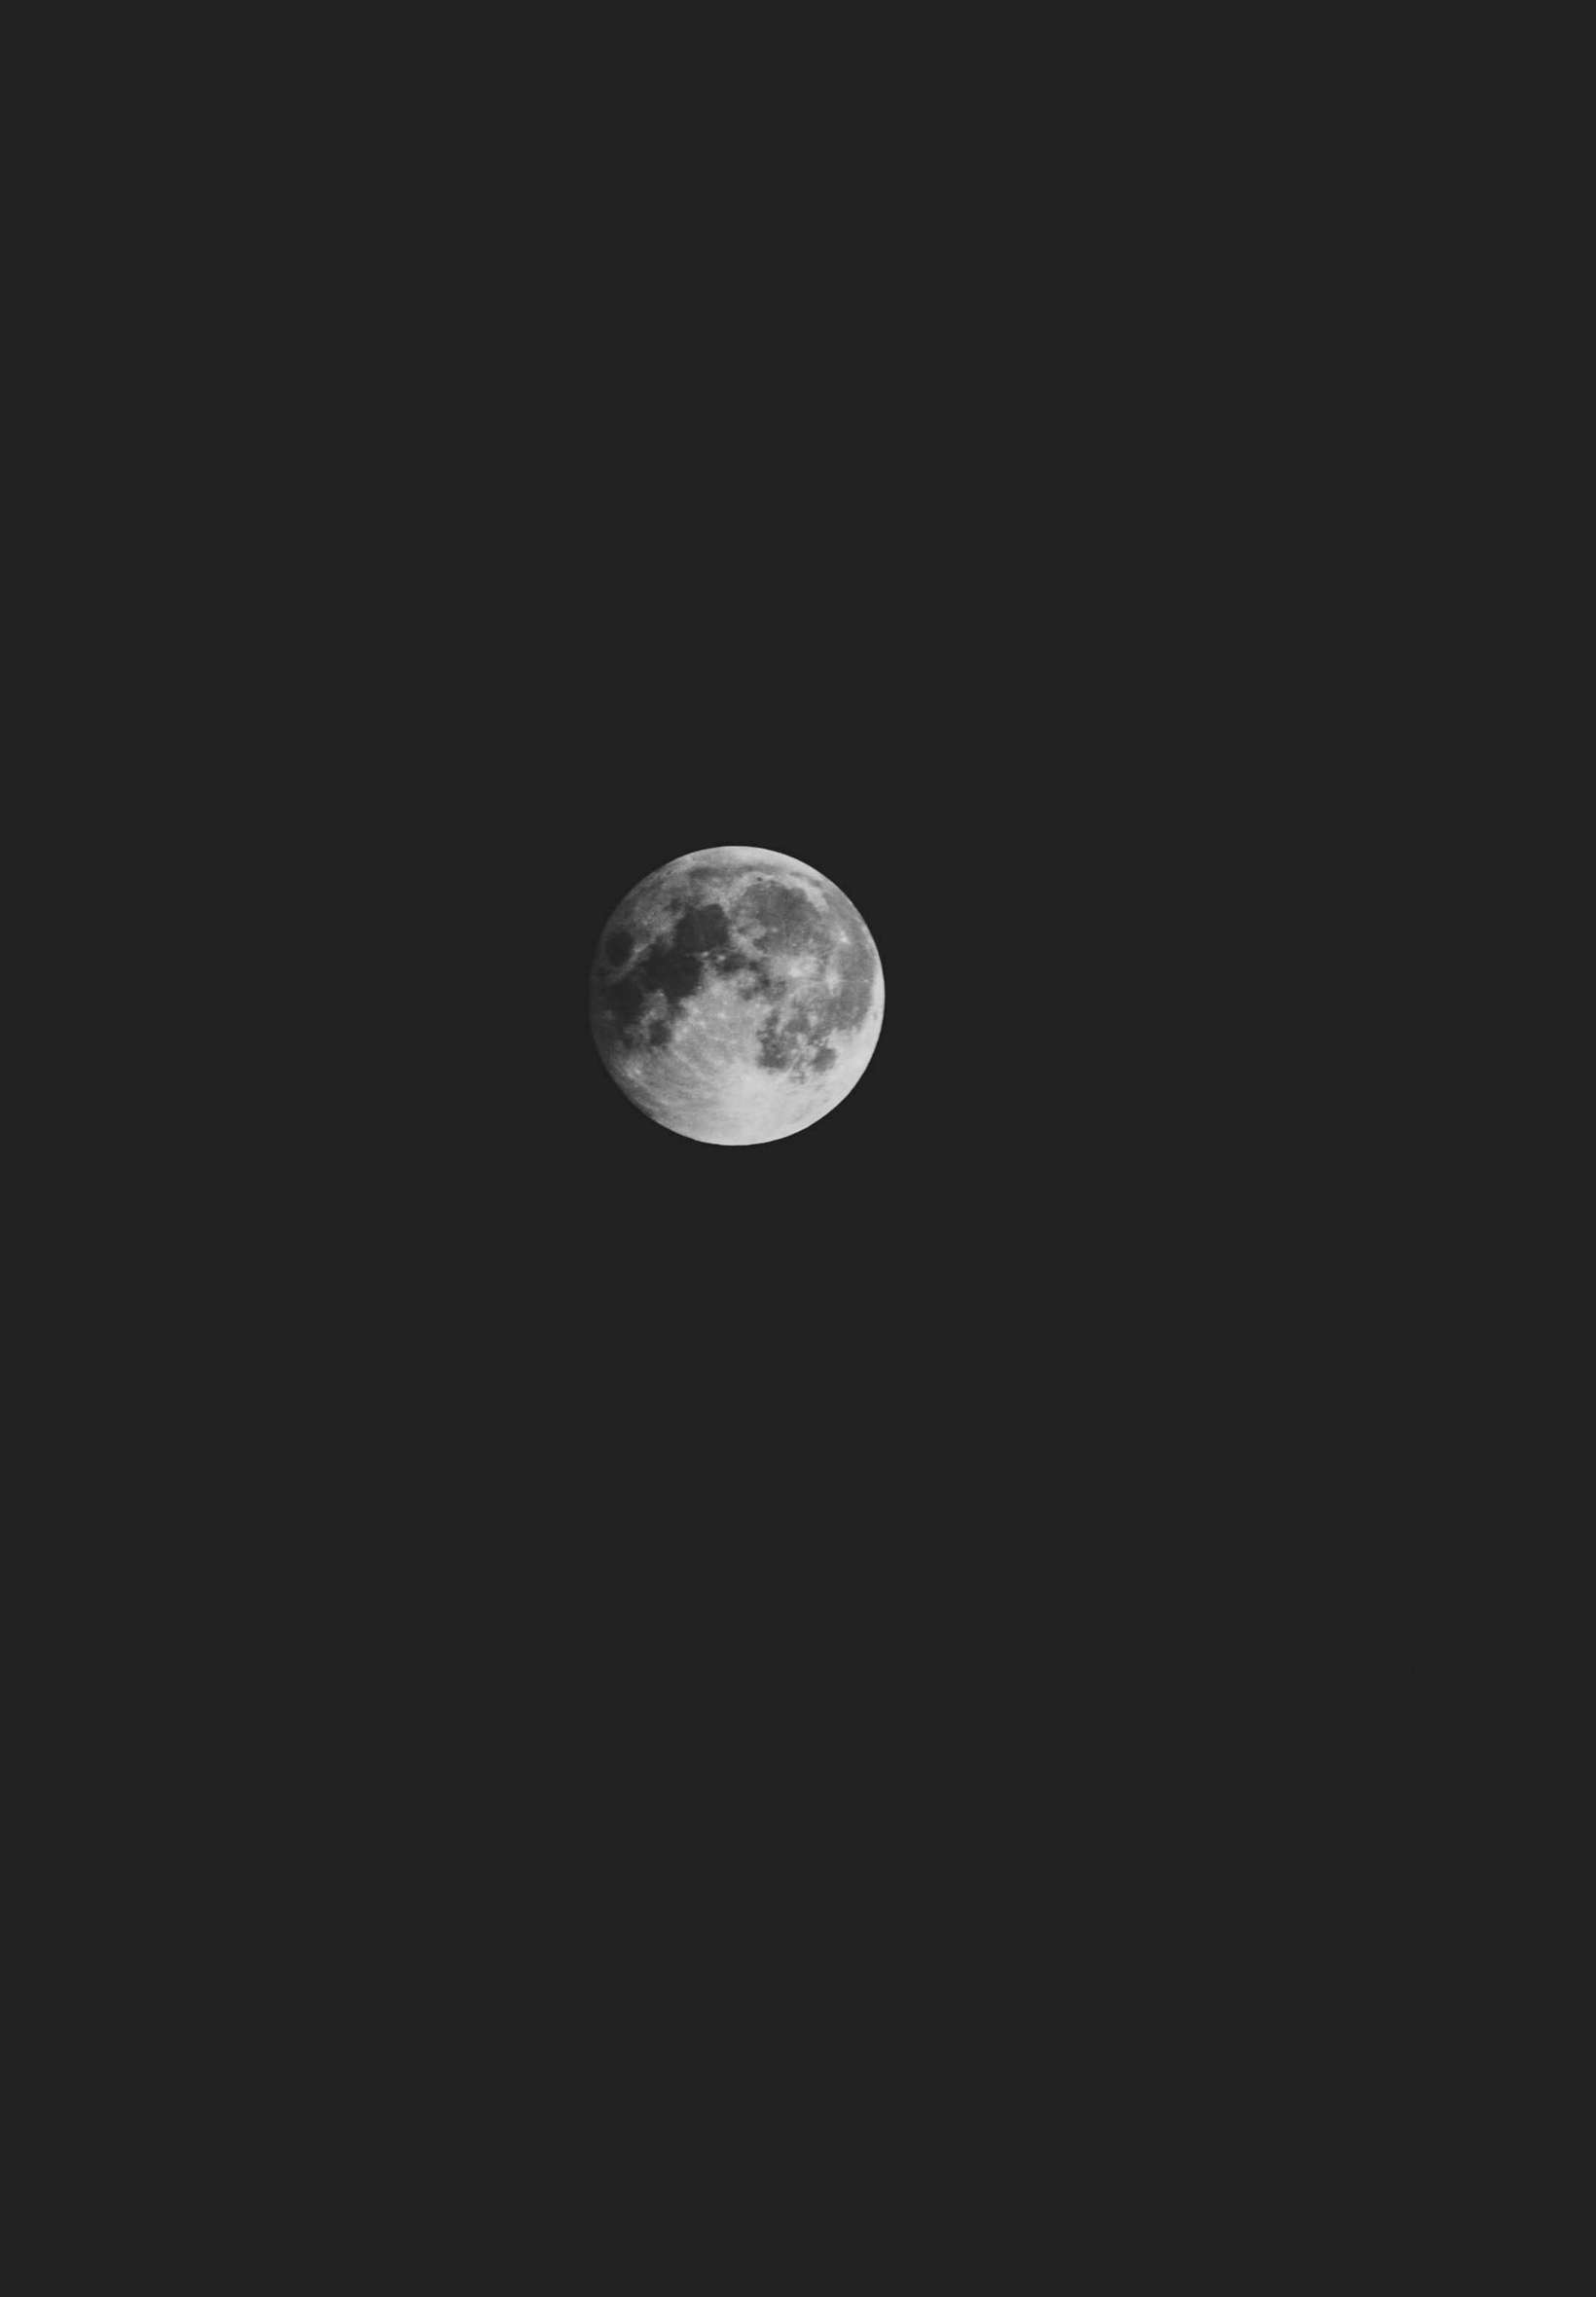 Hình nền iPad Mặt trăng 4K: Biến chiếc iPad của bạn thành một cửa sổ để chiêm ngưỡng Mặt trăng 4K hoàn hảo nhất. Đắm mình trong cảnh tượng tuyệt đẹp của mặt trăng với hình nền chất lượng cao. Click để xem hình nền iPad Mặt trăng 4K đầy ấn tượng.